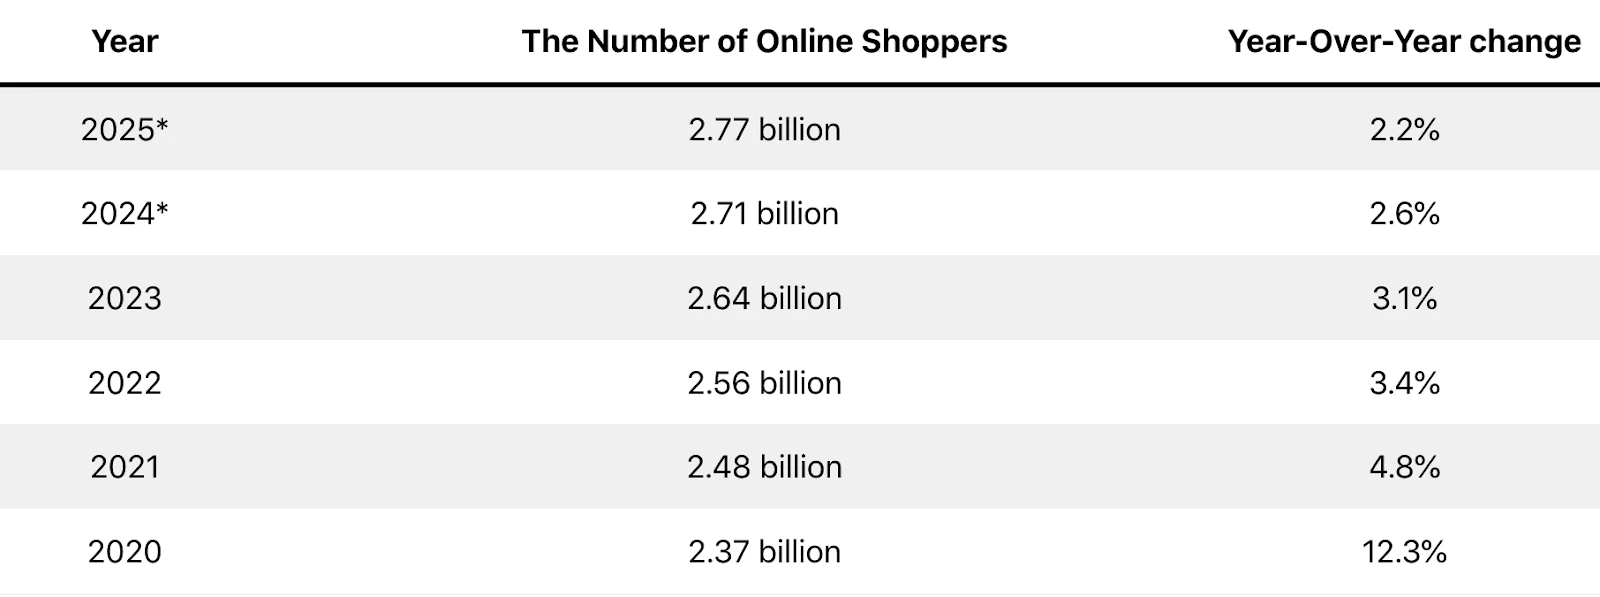 圖1. 網路購物者歷年與預測數量 （來源：DemandSage）